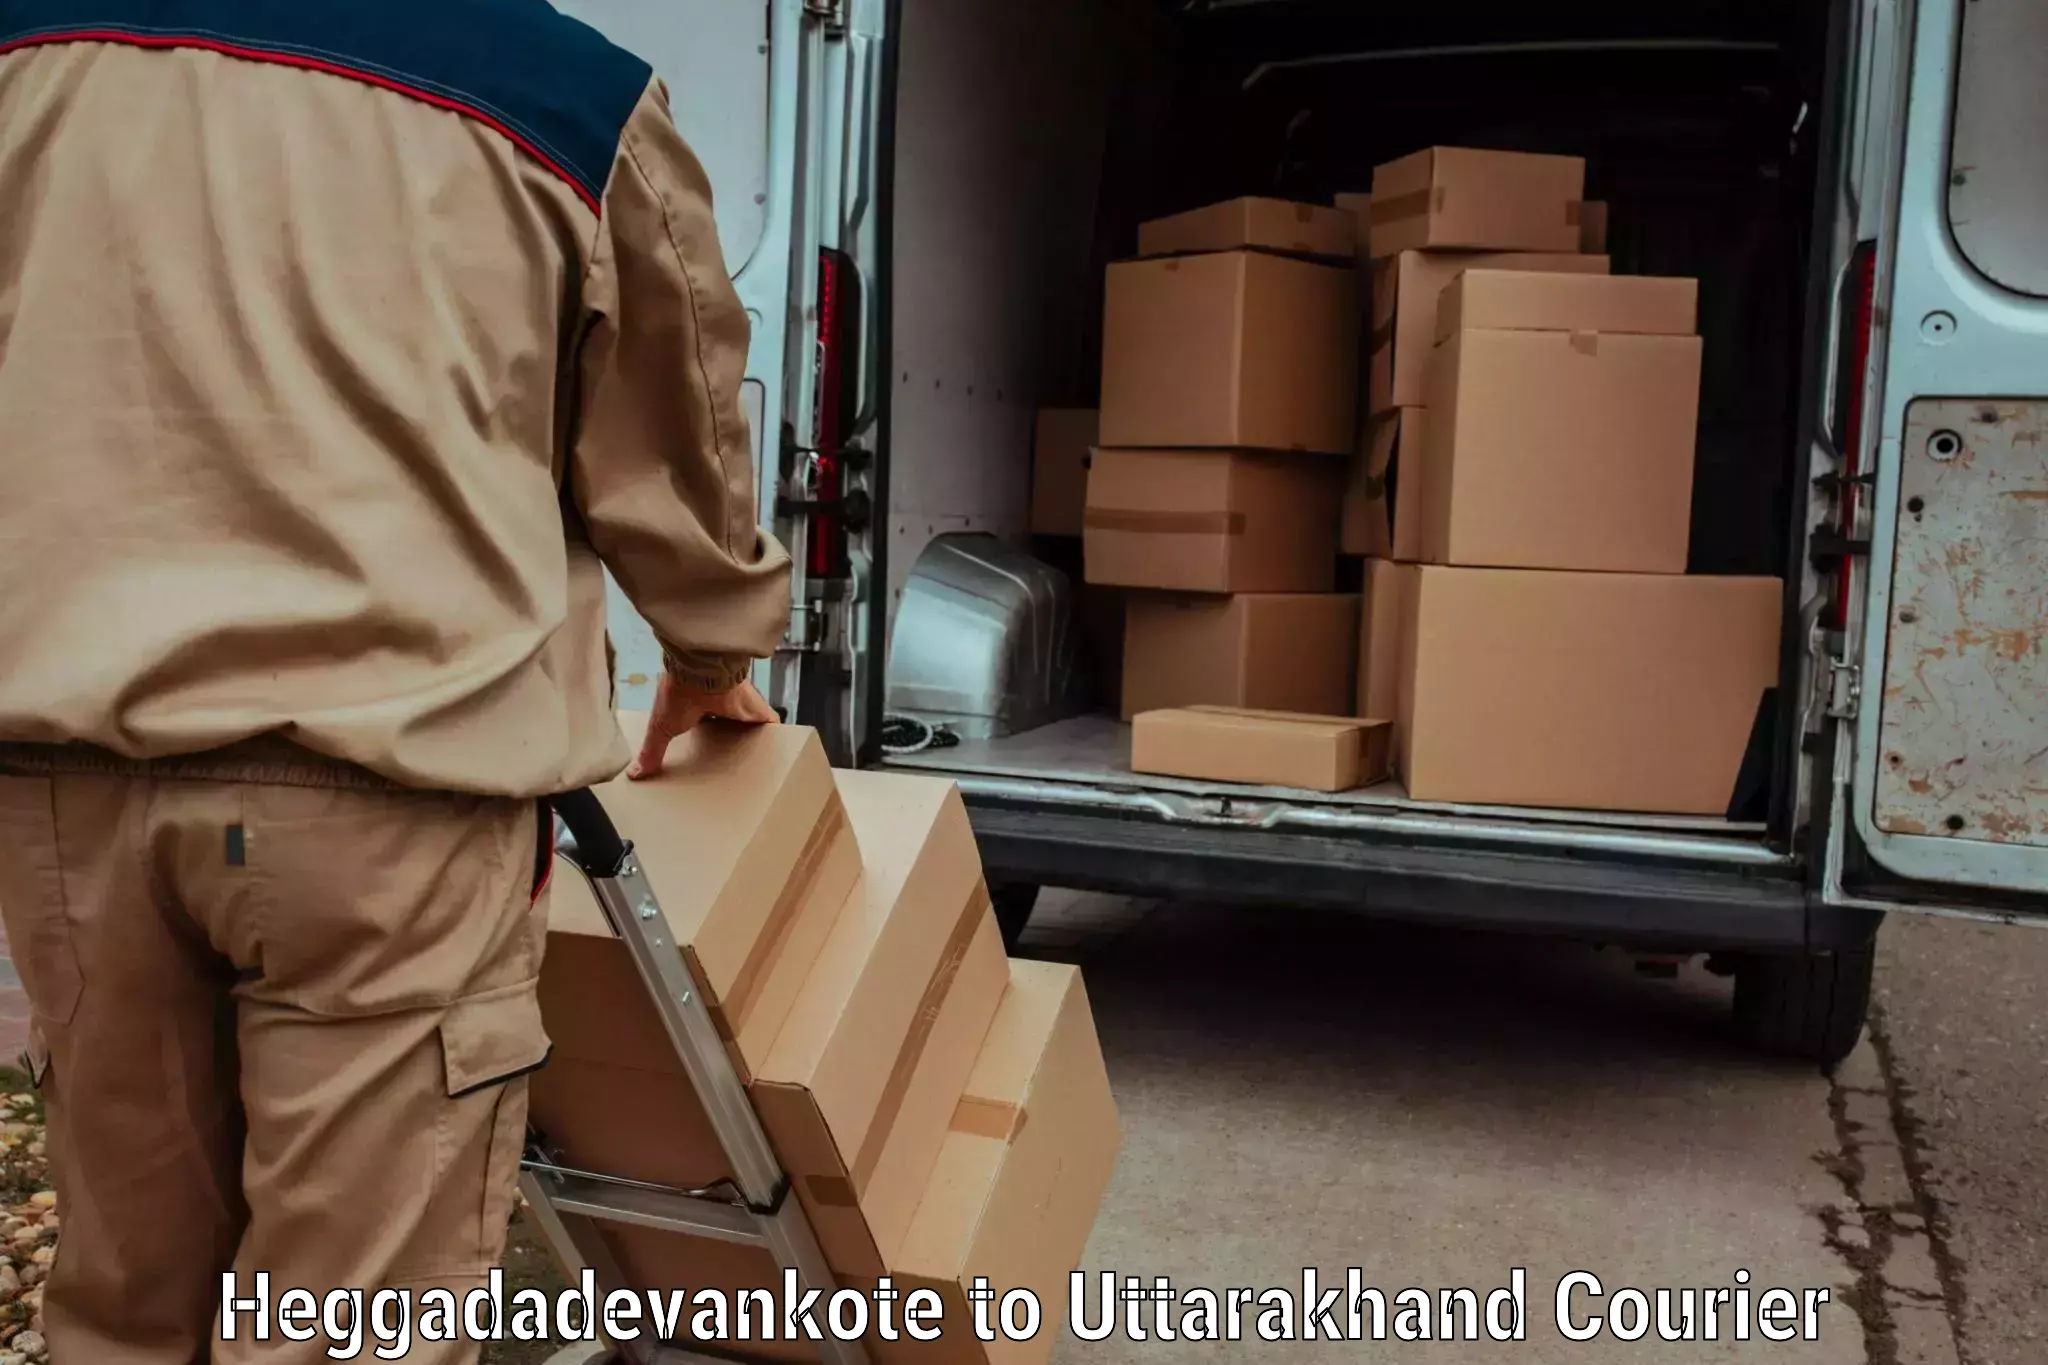 User-friendly delivery service Heggadadevankote to Rudraprayag